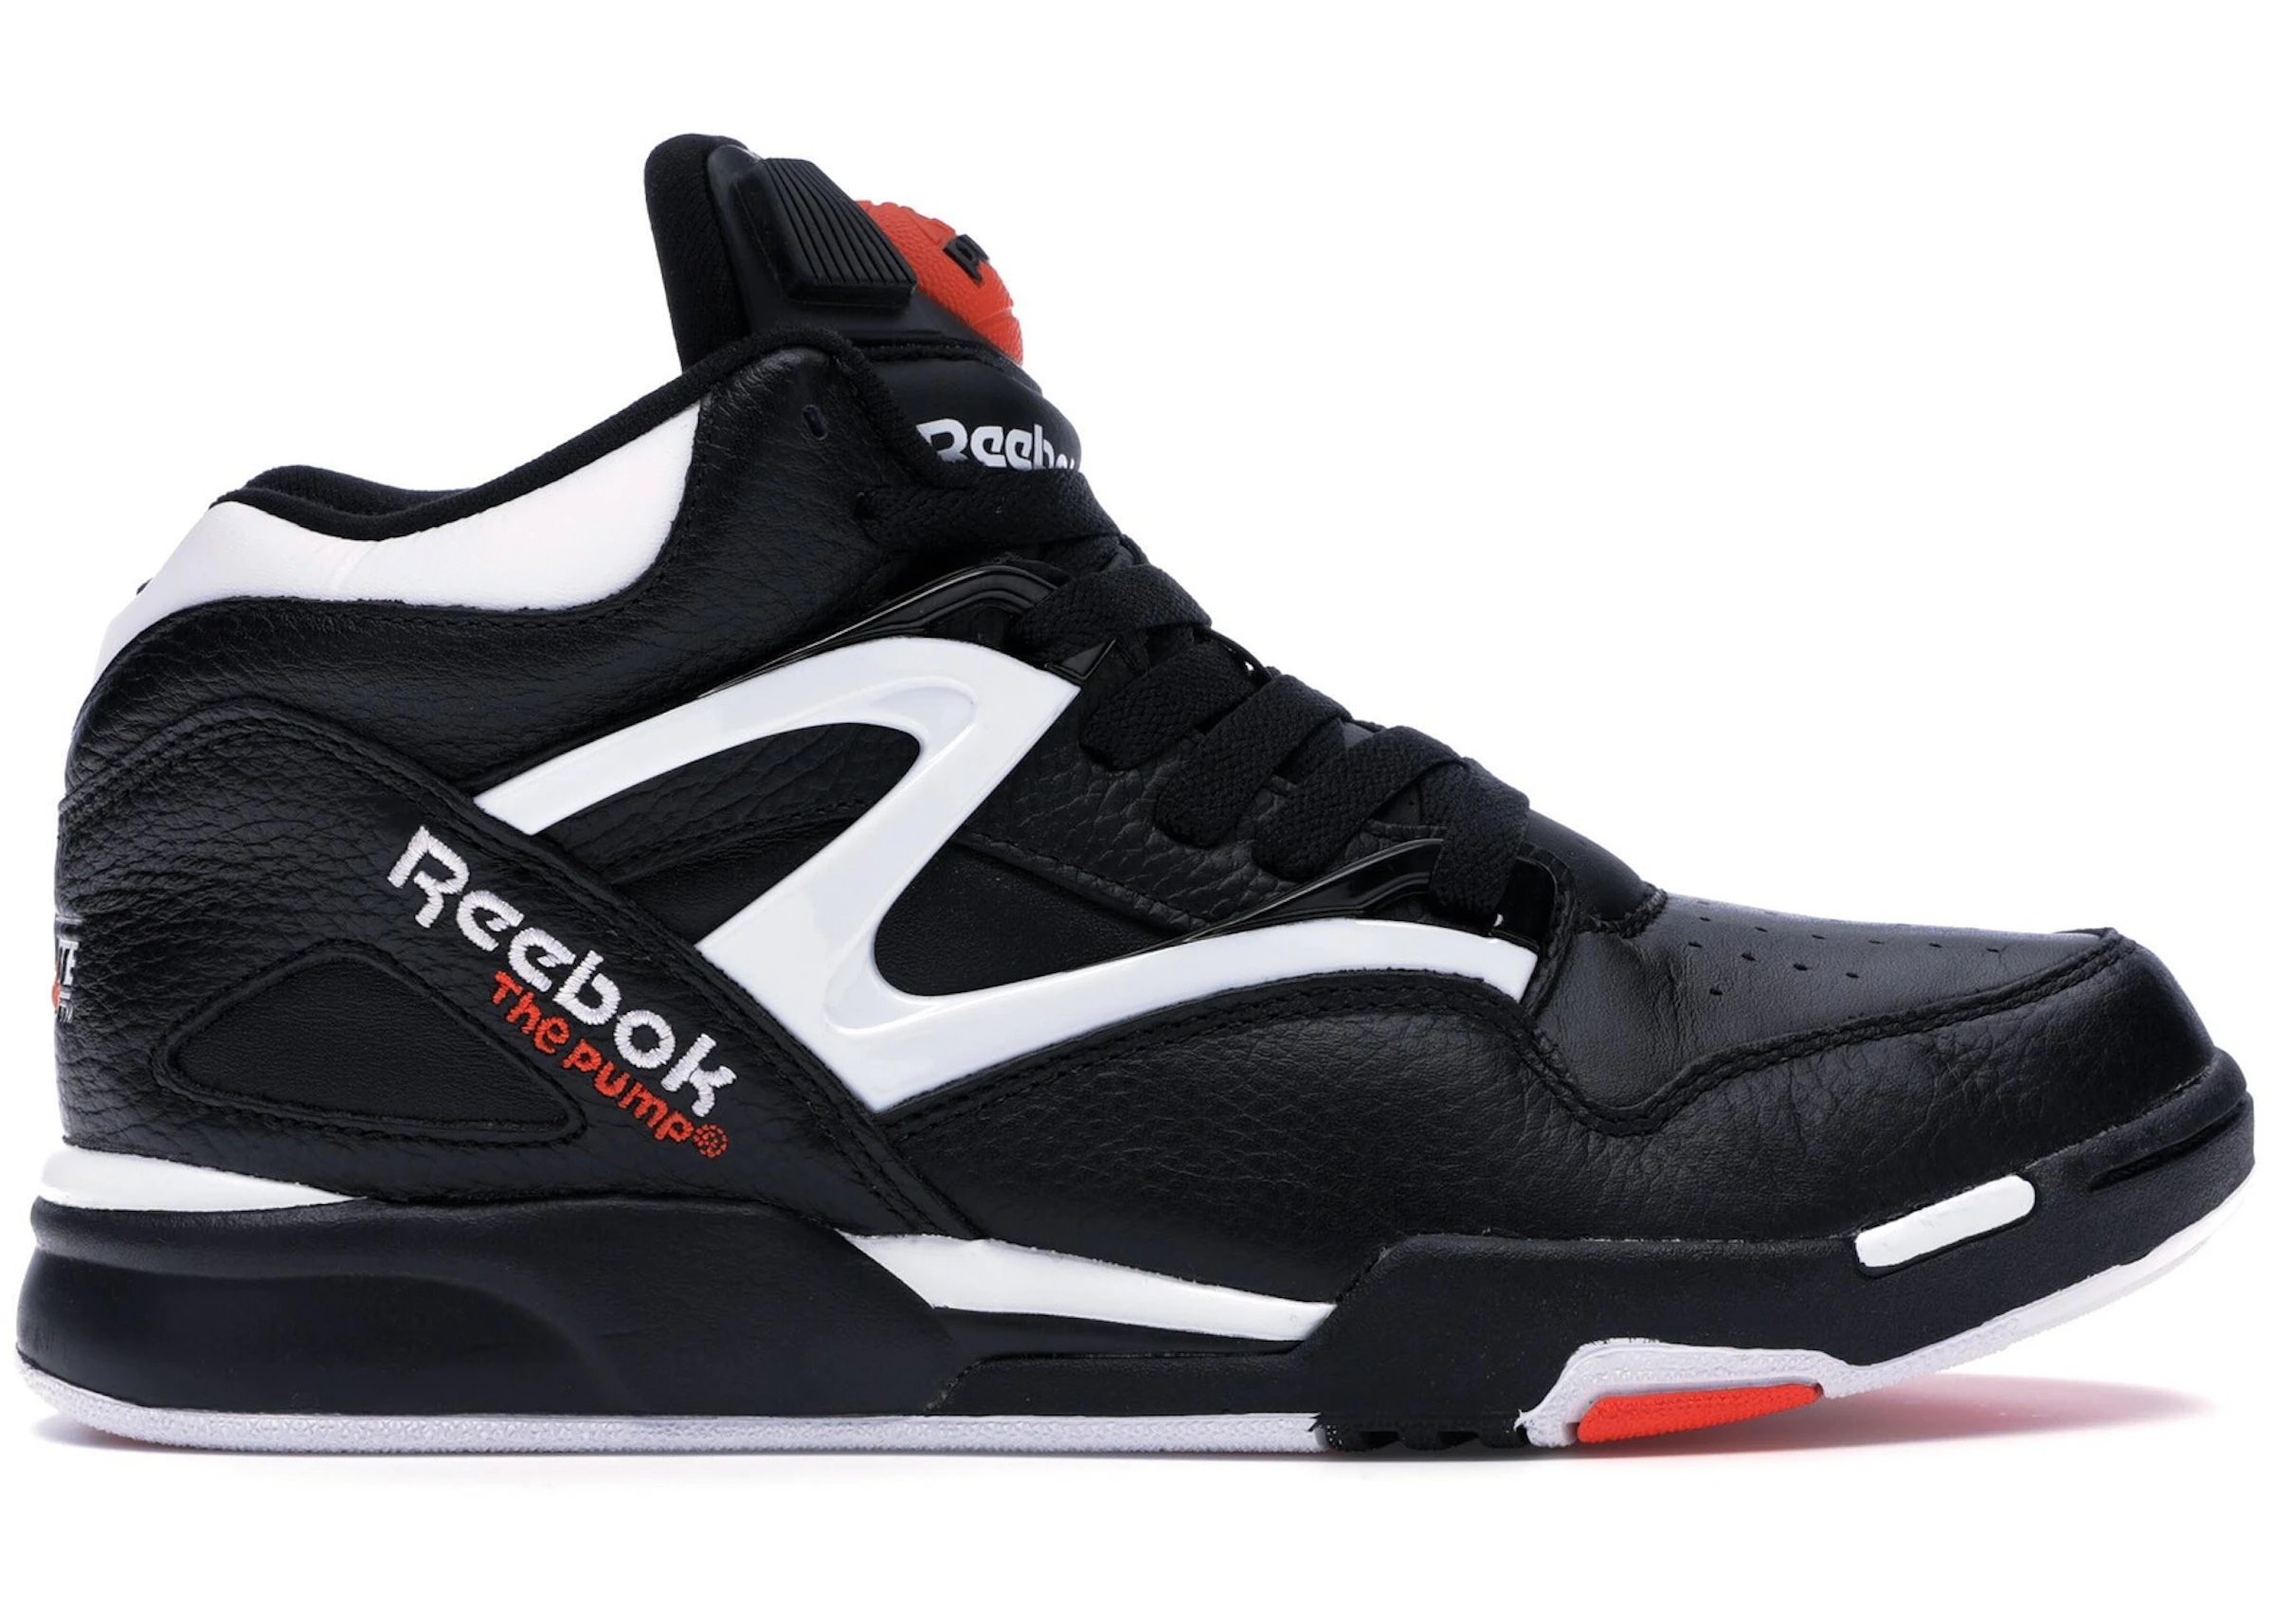 Compra Reebok Calzado y sneakers nuevos - StockX